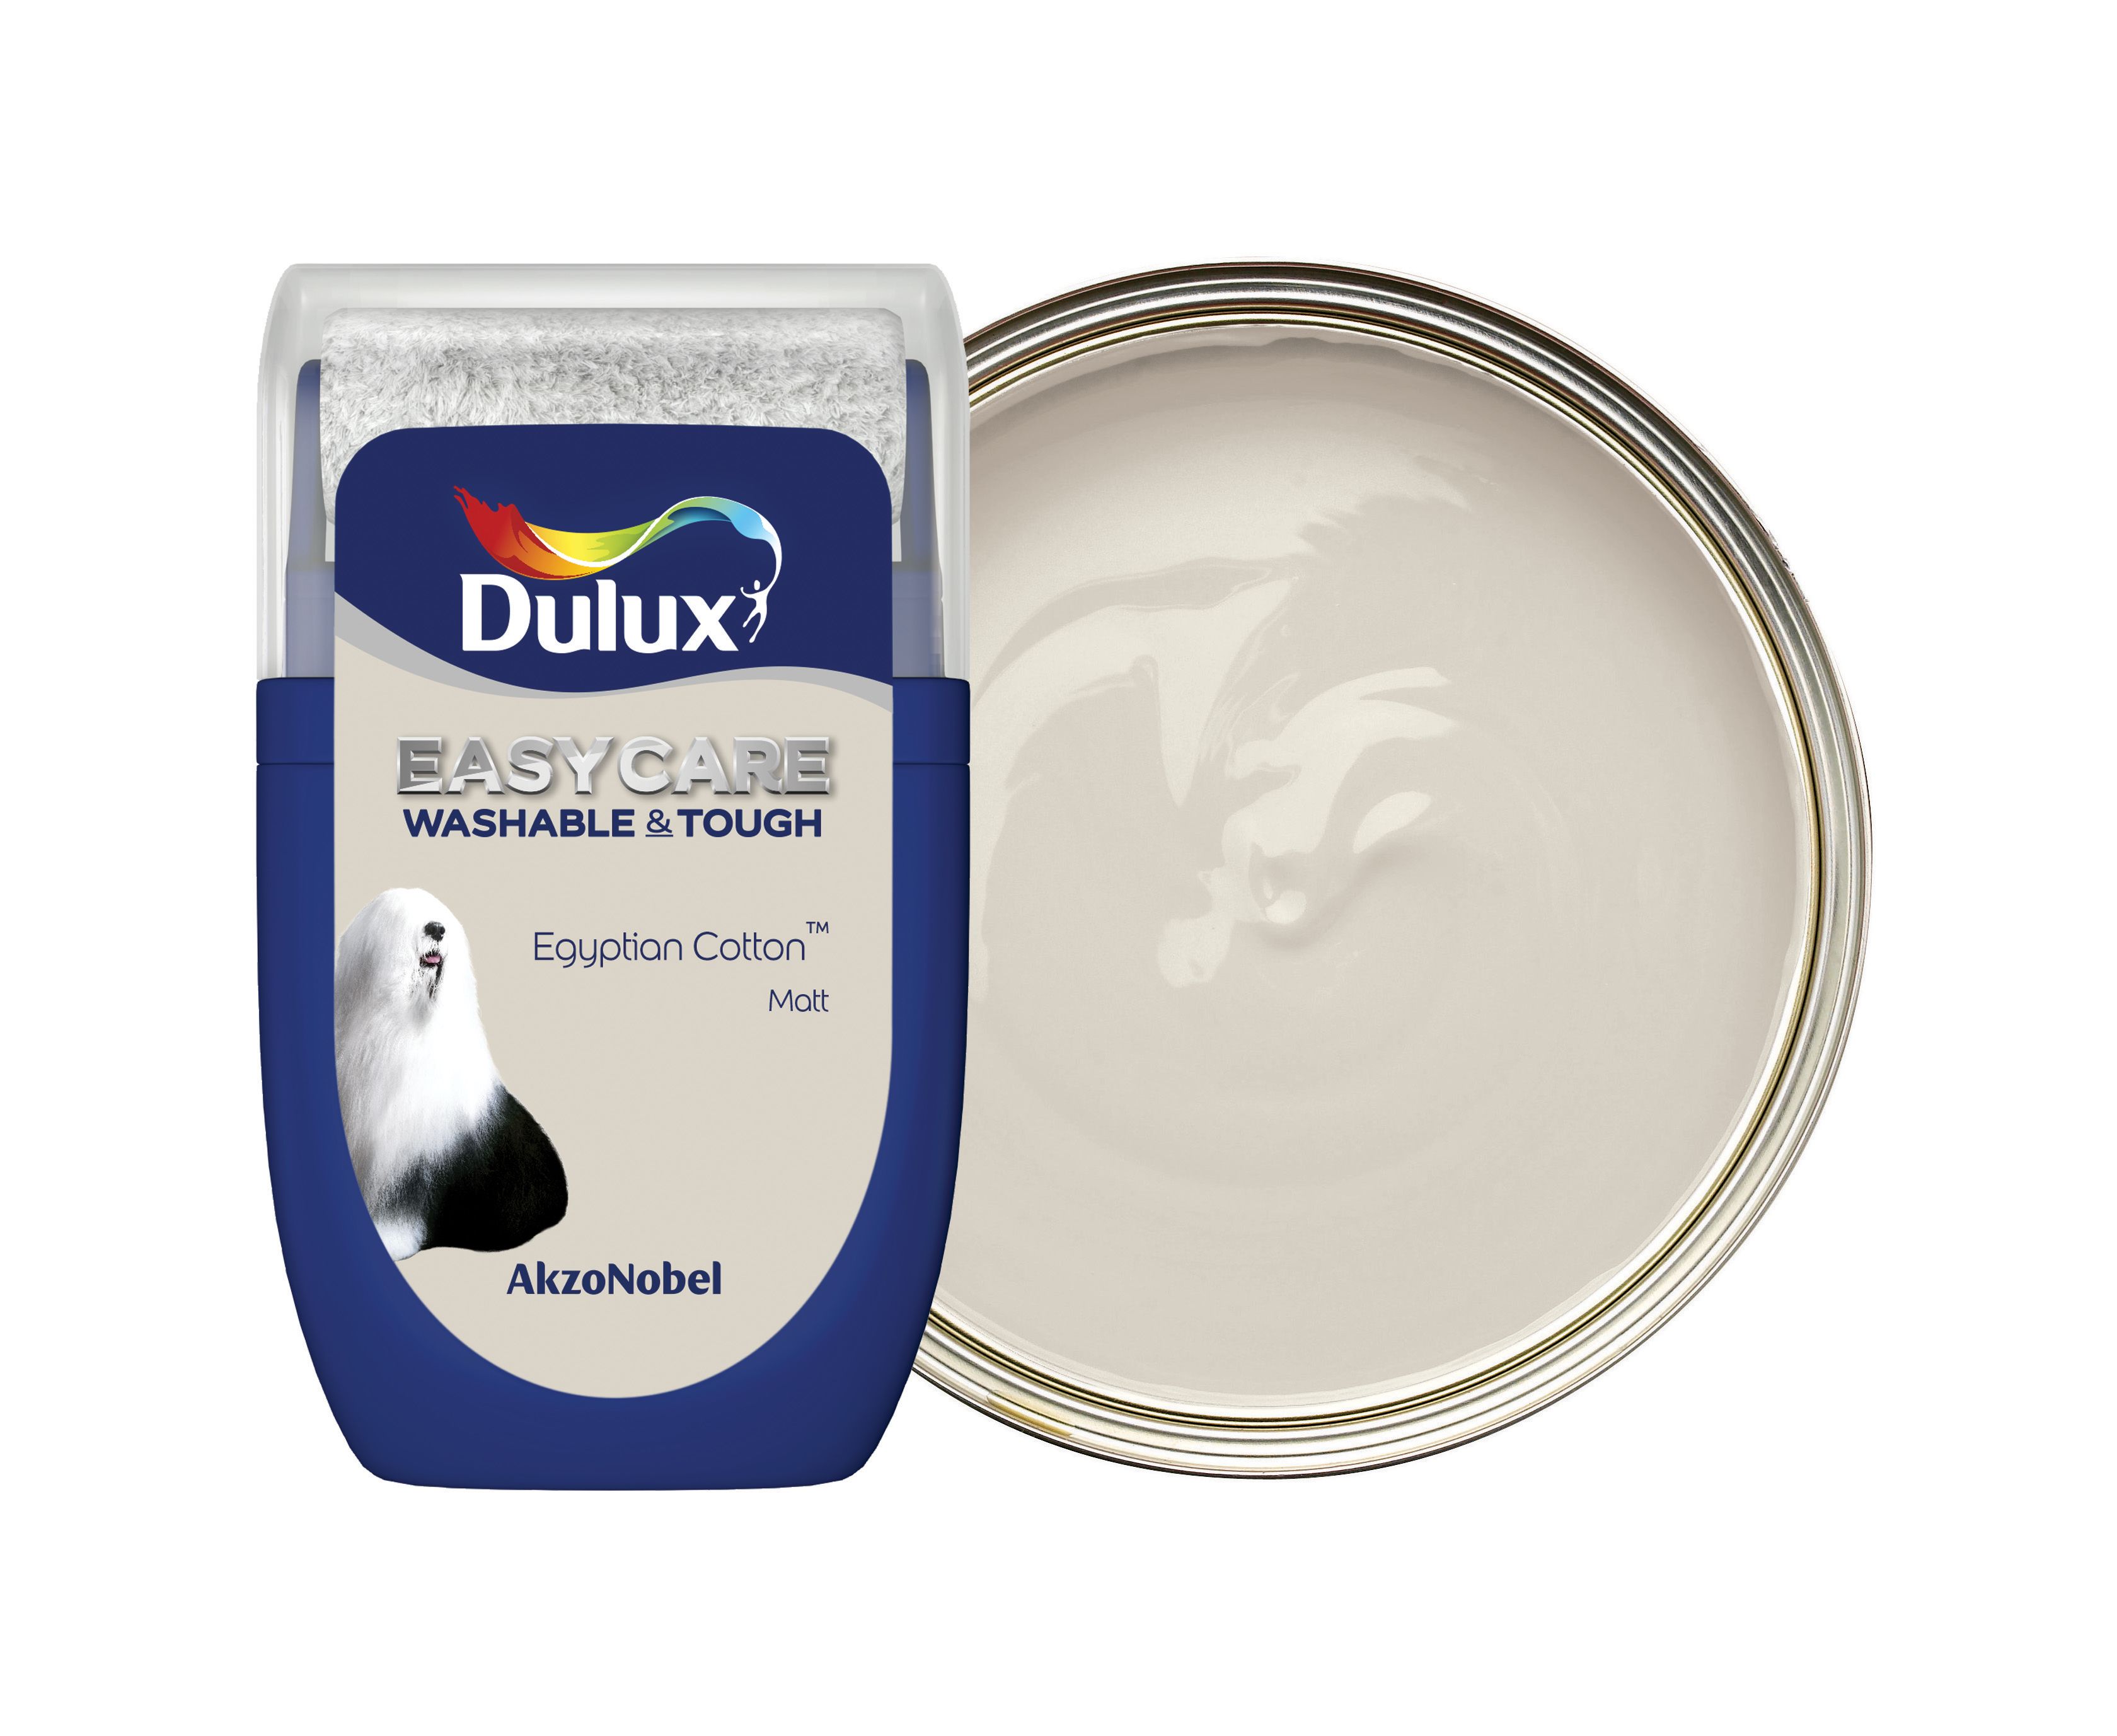 Dulux Easycare Washable & Tough Paint Tester Pot - Egyptian Cotton - 30ml